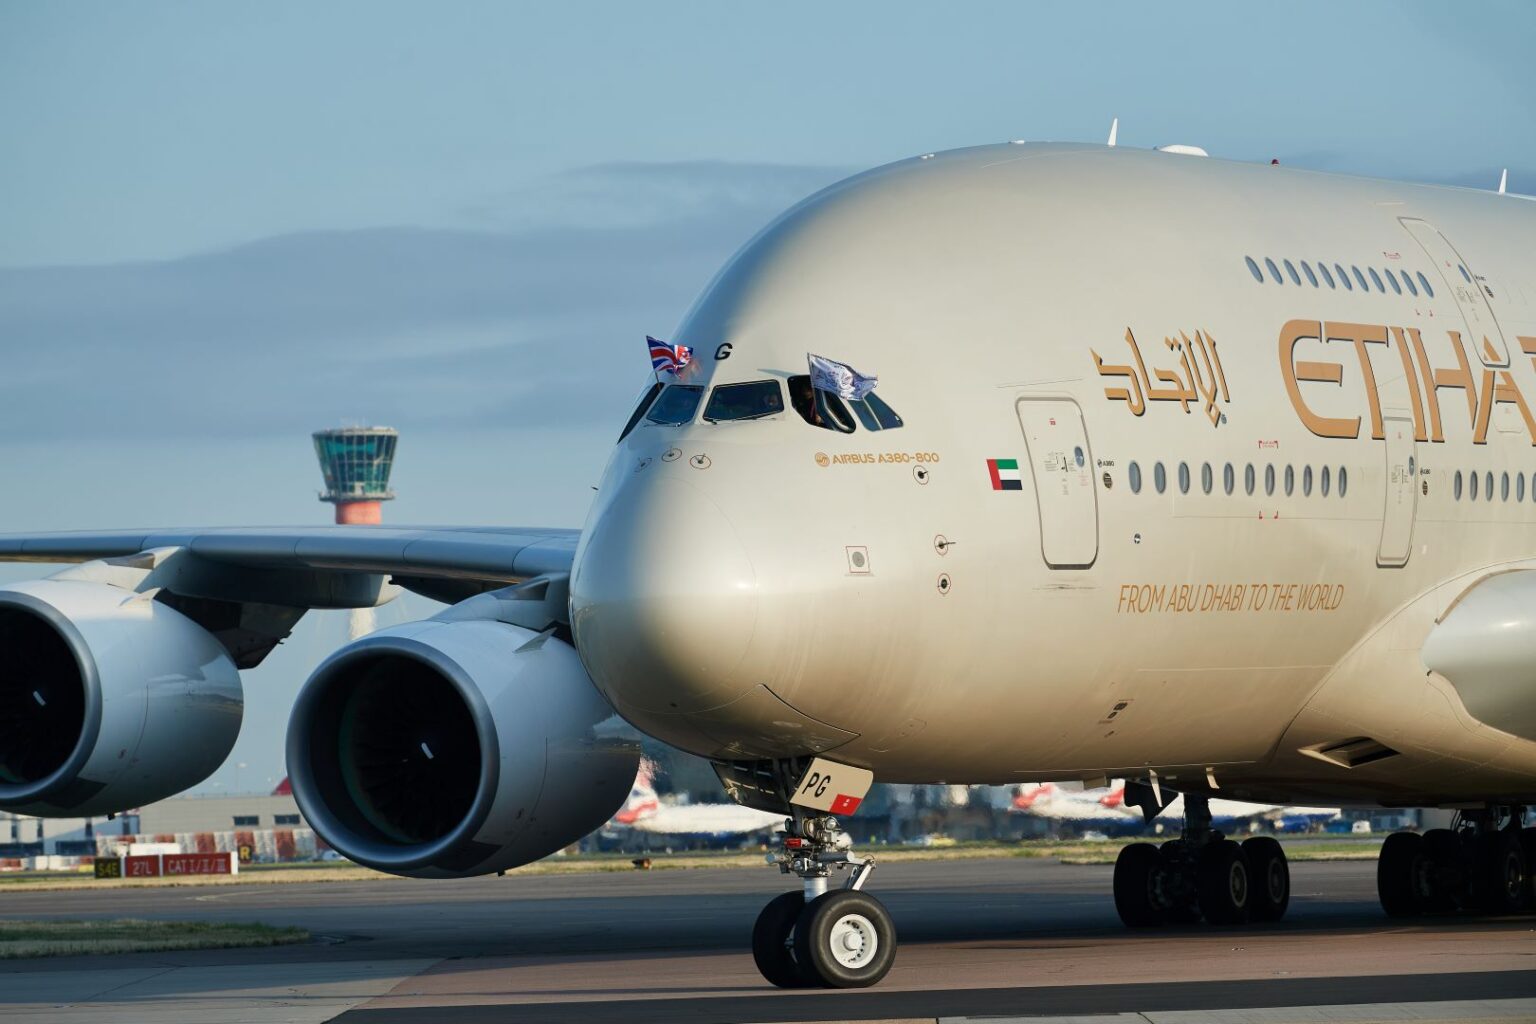 الاتحاد للطيران تحتفل بعودة طائراتها الايرباص A380 مع أولى رحلاتها من أبوظبي إلى لندن